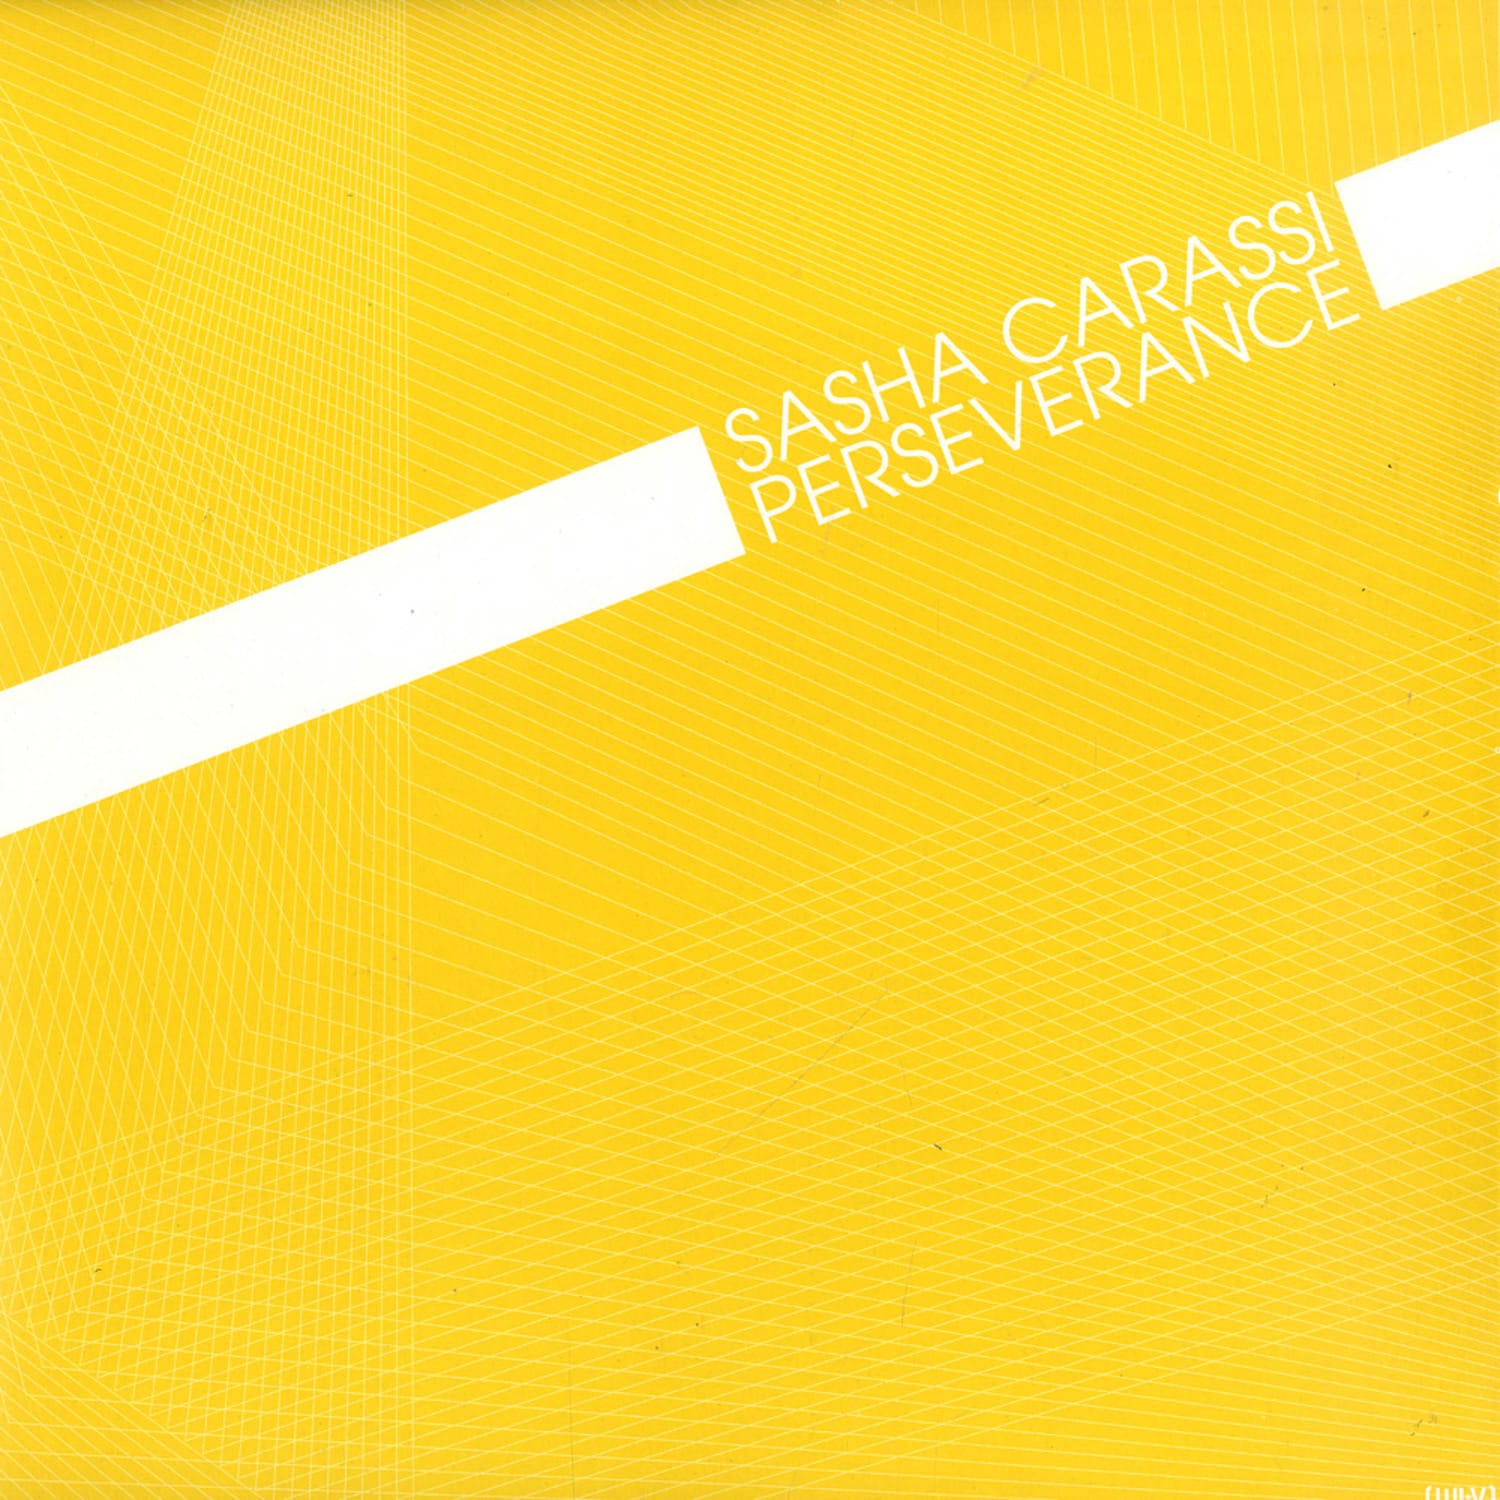 Sasha Carassi - ROWBELLS